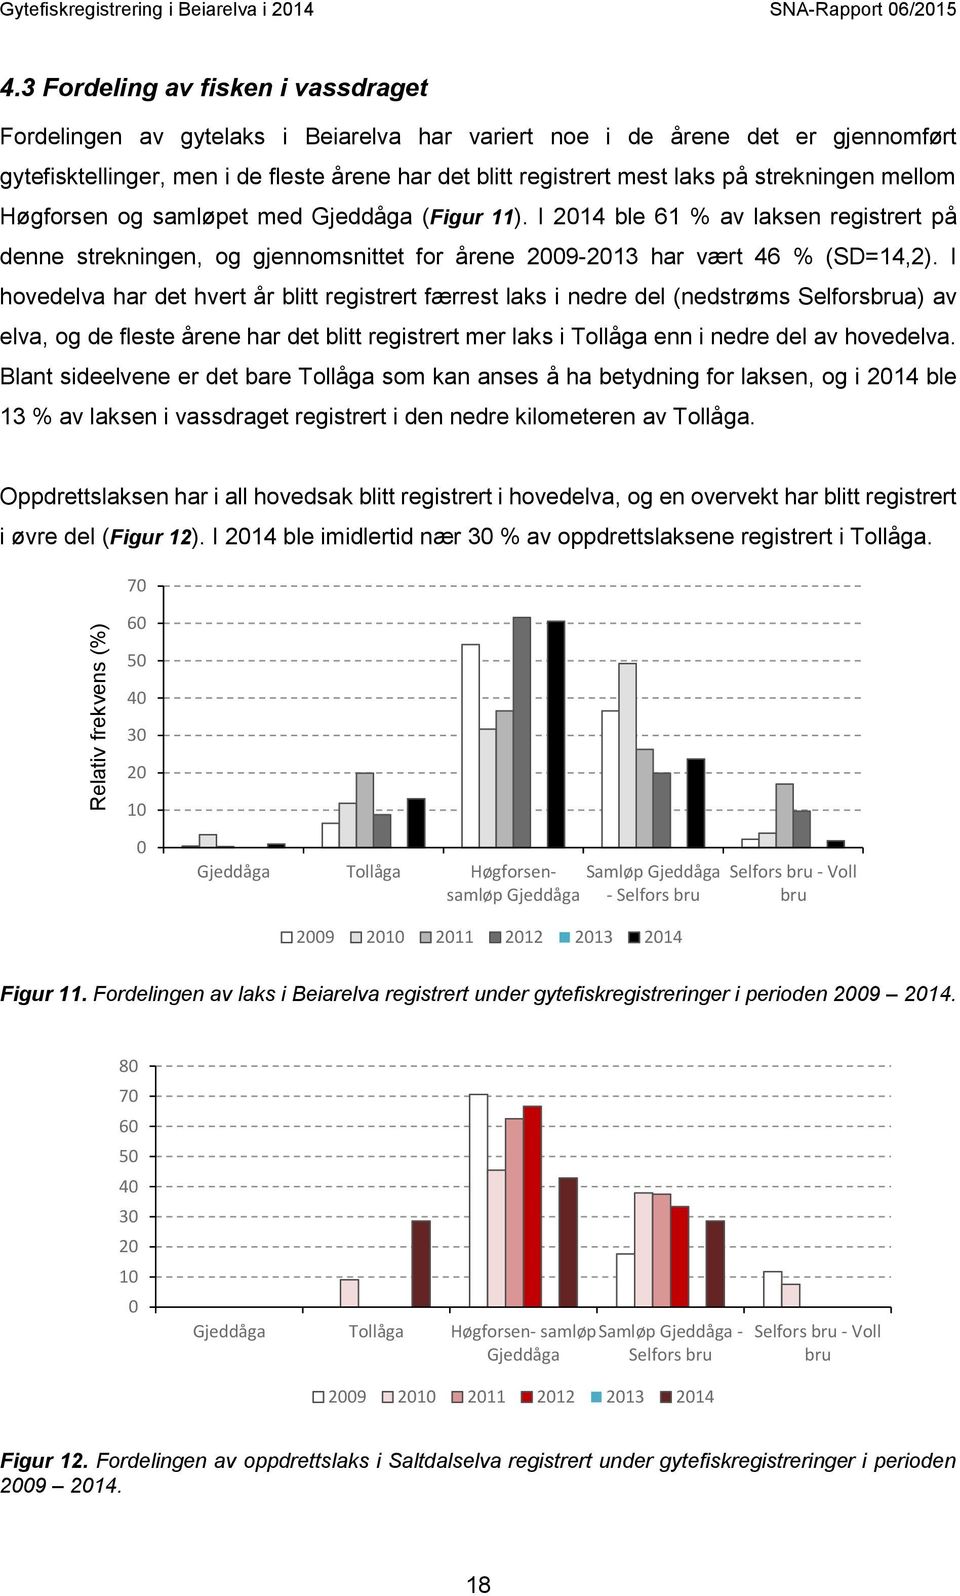 strekningen mellom Høgforsen og samløpet med Gjeddåga (Figur 11). I 2014 ble 61 % av laksen registrert på denne strekningen, og gjennomsnittet for årene 2009-2013 har vært 46 % (SD=14,2).